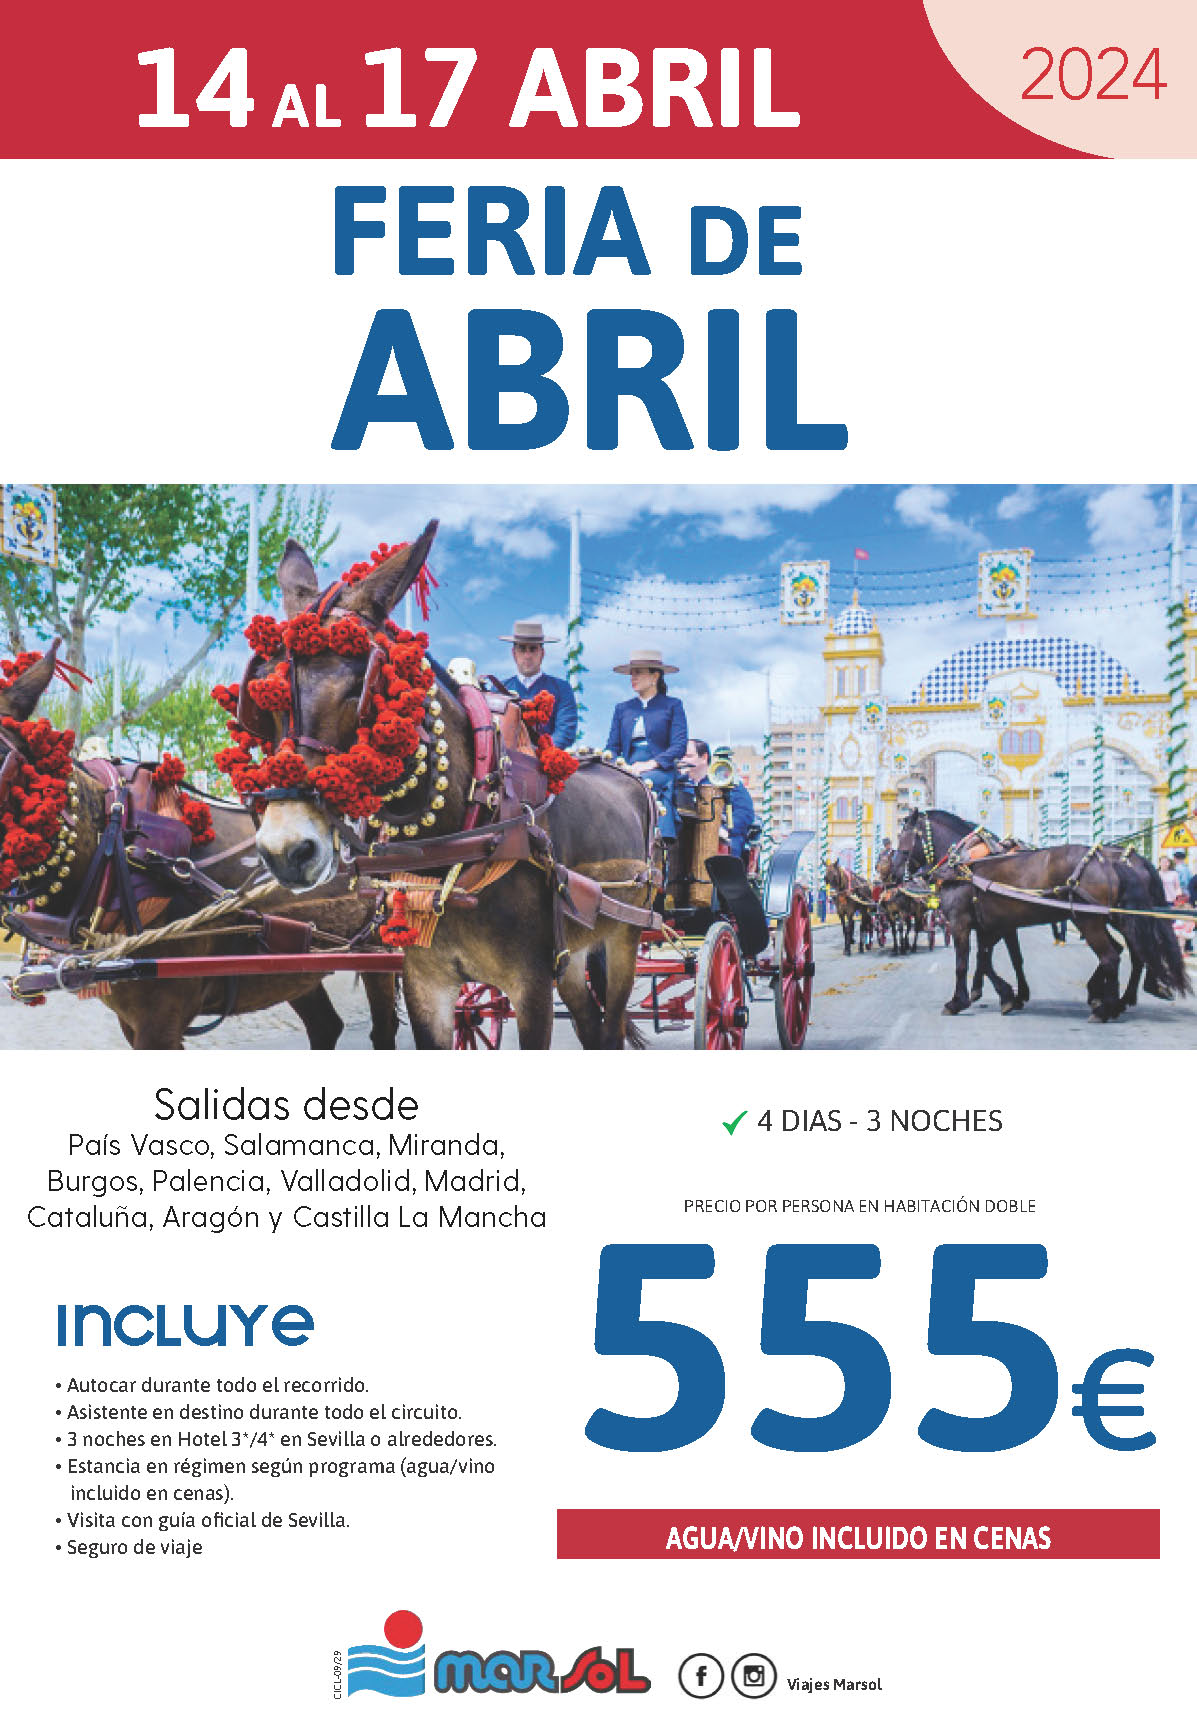 Oferta Marsol Feria de Abril 2024 4 dias salidas 14 abril desde el Norte de España